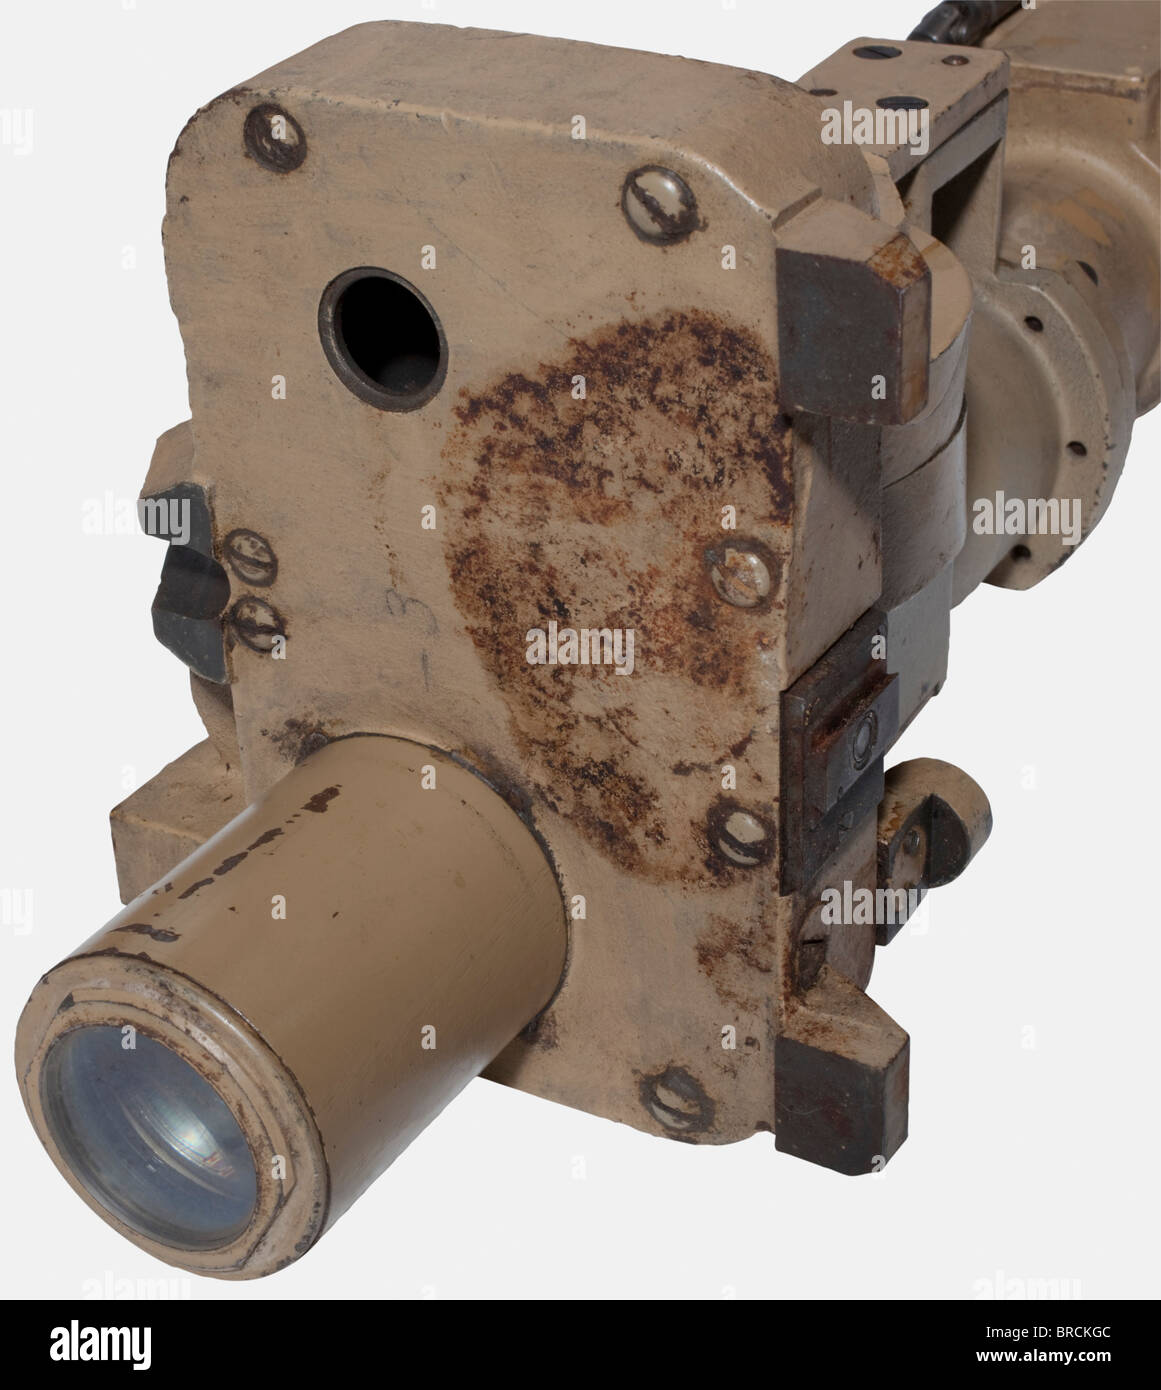 Un télescope à tourelle, pour un Panzer V 'Panther' SdKfz 171 boîtier laqué de couleur sable, inscrit, 'hv - T.Z.F. 12 A - 501047 T' avec un interrupteur extérieur clair/sombre, un levier de sélection pour les différentes zones cibles pour le perçage d'armure ou les coquilles explosives élevées et pour le réglage de l'échelle extérieure de la zone cible à l'aide d'un arbre d'entraînement extérieur. Les optiques sont, dans la mesure où elles peuvent être testées, en condition de travail. Longueur env. 113 cm. L'exhaustivité ne peut pas être assurée. Livré avec le boîtier de transport (endommagé). Dimensions CA. 125 x 25 x 23 cm. Également la facture du fabricant o, Banque D'Images